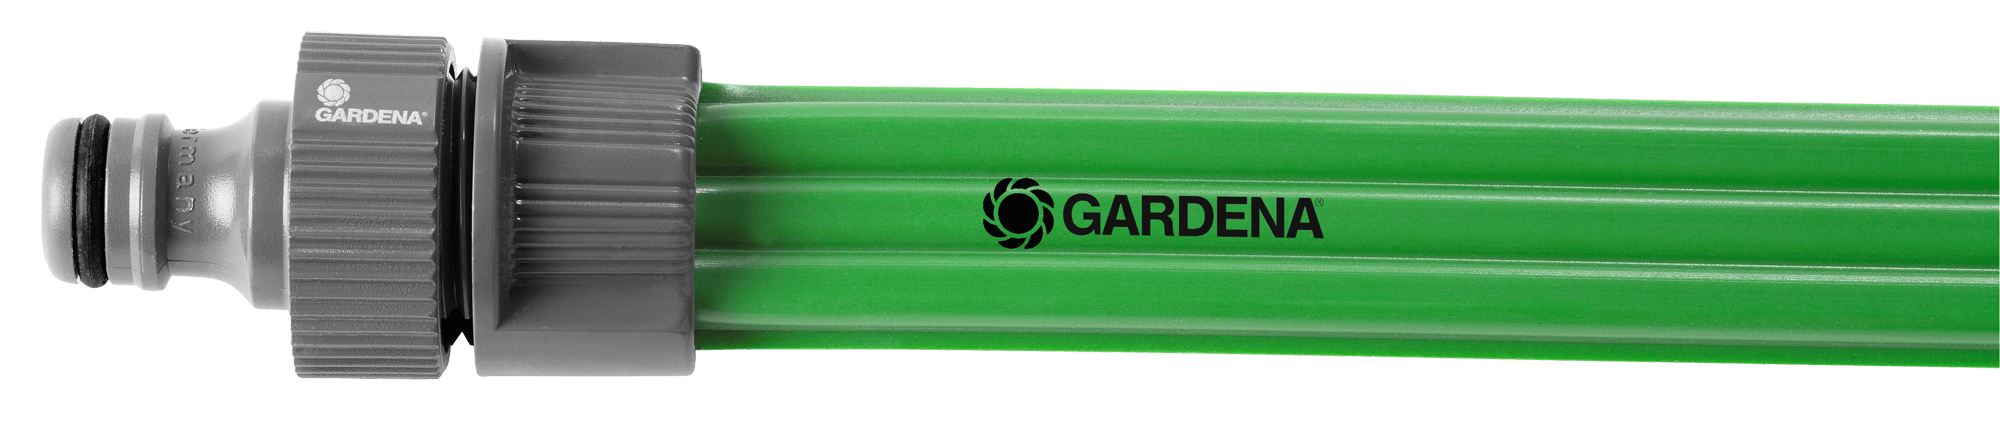 Gardena Schlauch-Regner grün 15m